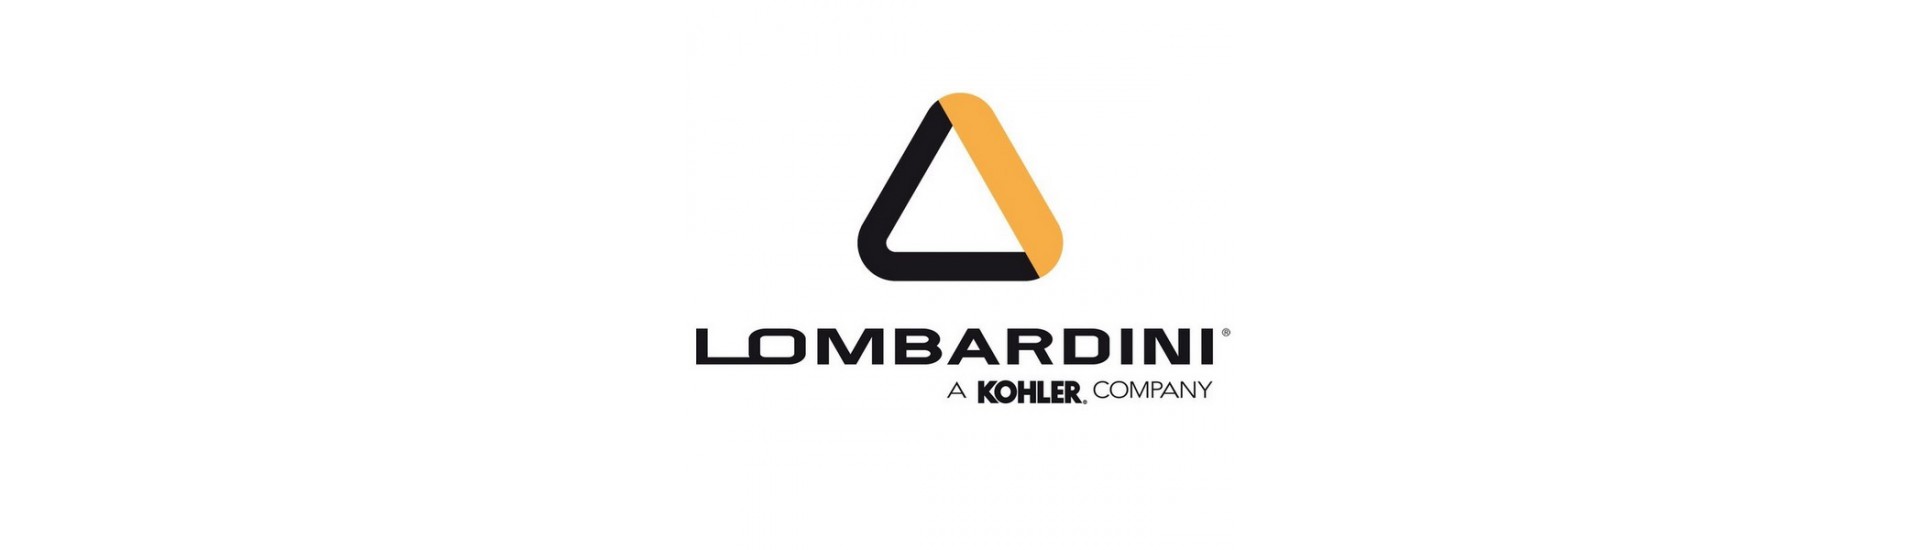 Pièces moteur Lombardini au meilleur prix pour voiture sans permis